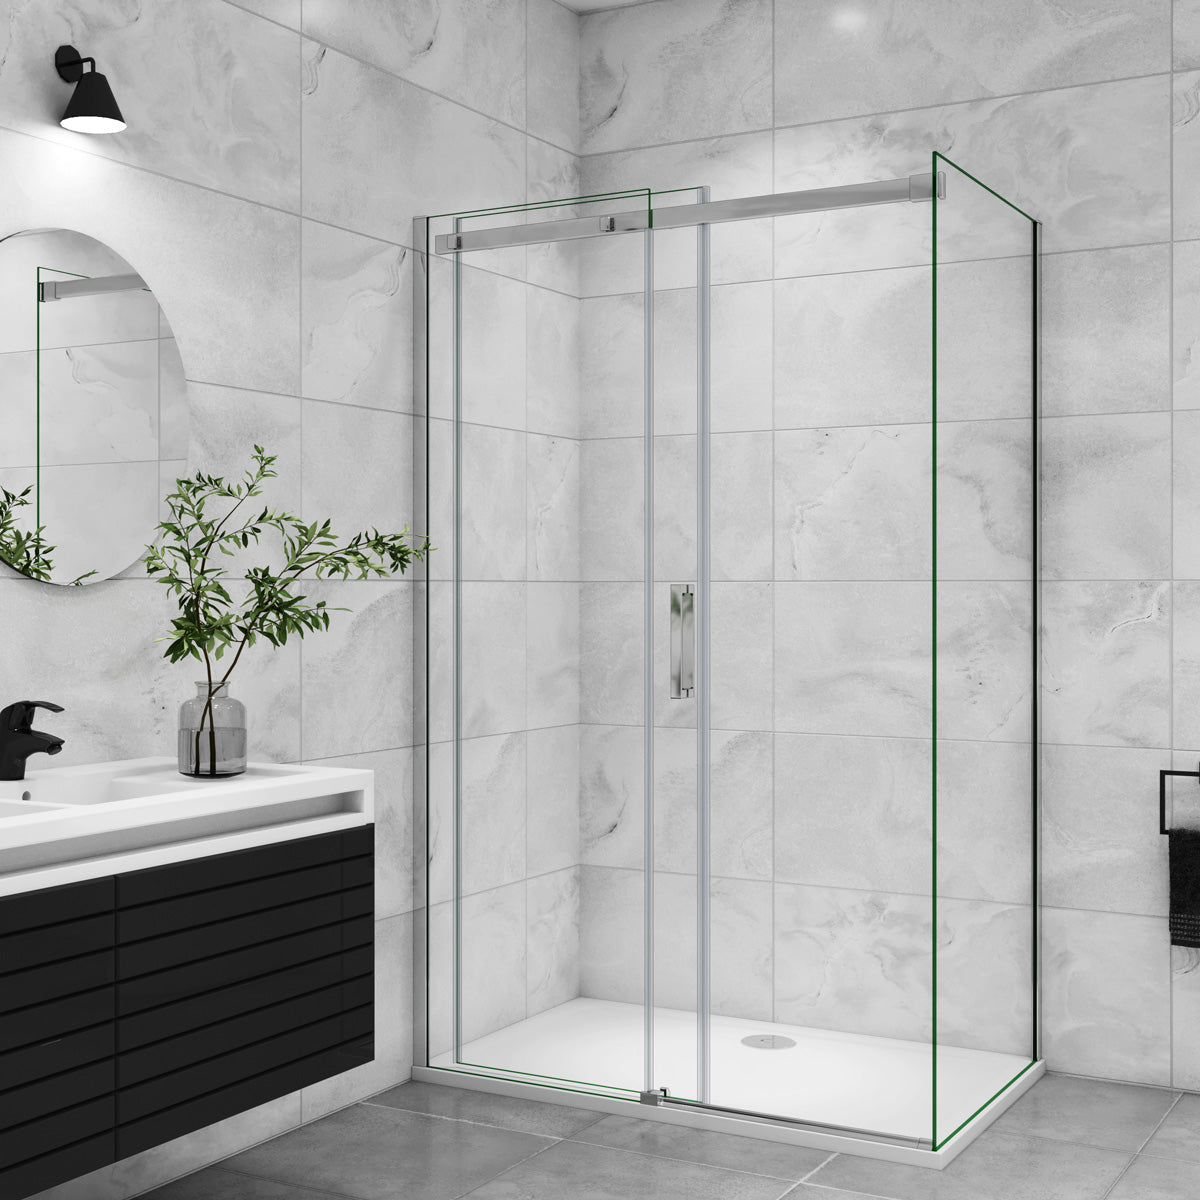 Duschtür+Seitenwand Duschkabine 120x80 cm Glasstärke 8mm Schiebetür Dusche Duschabtrennung